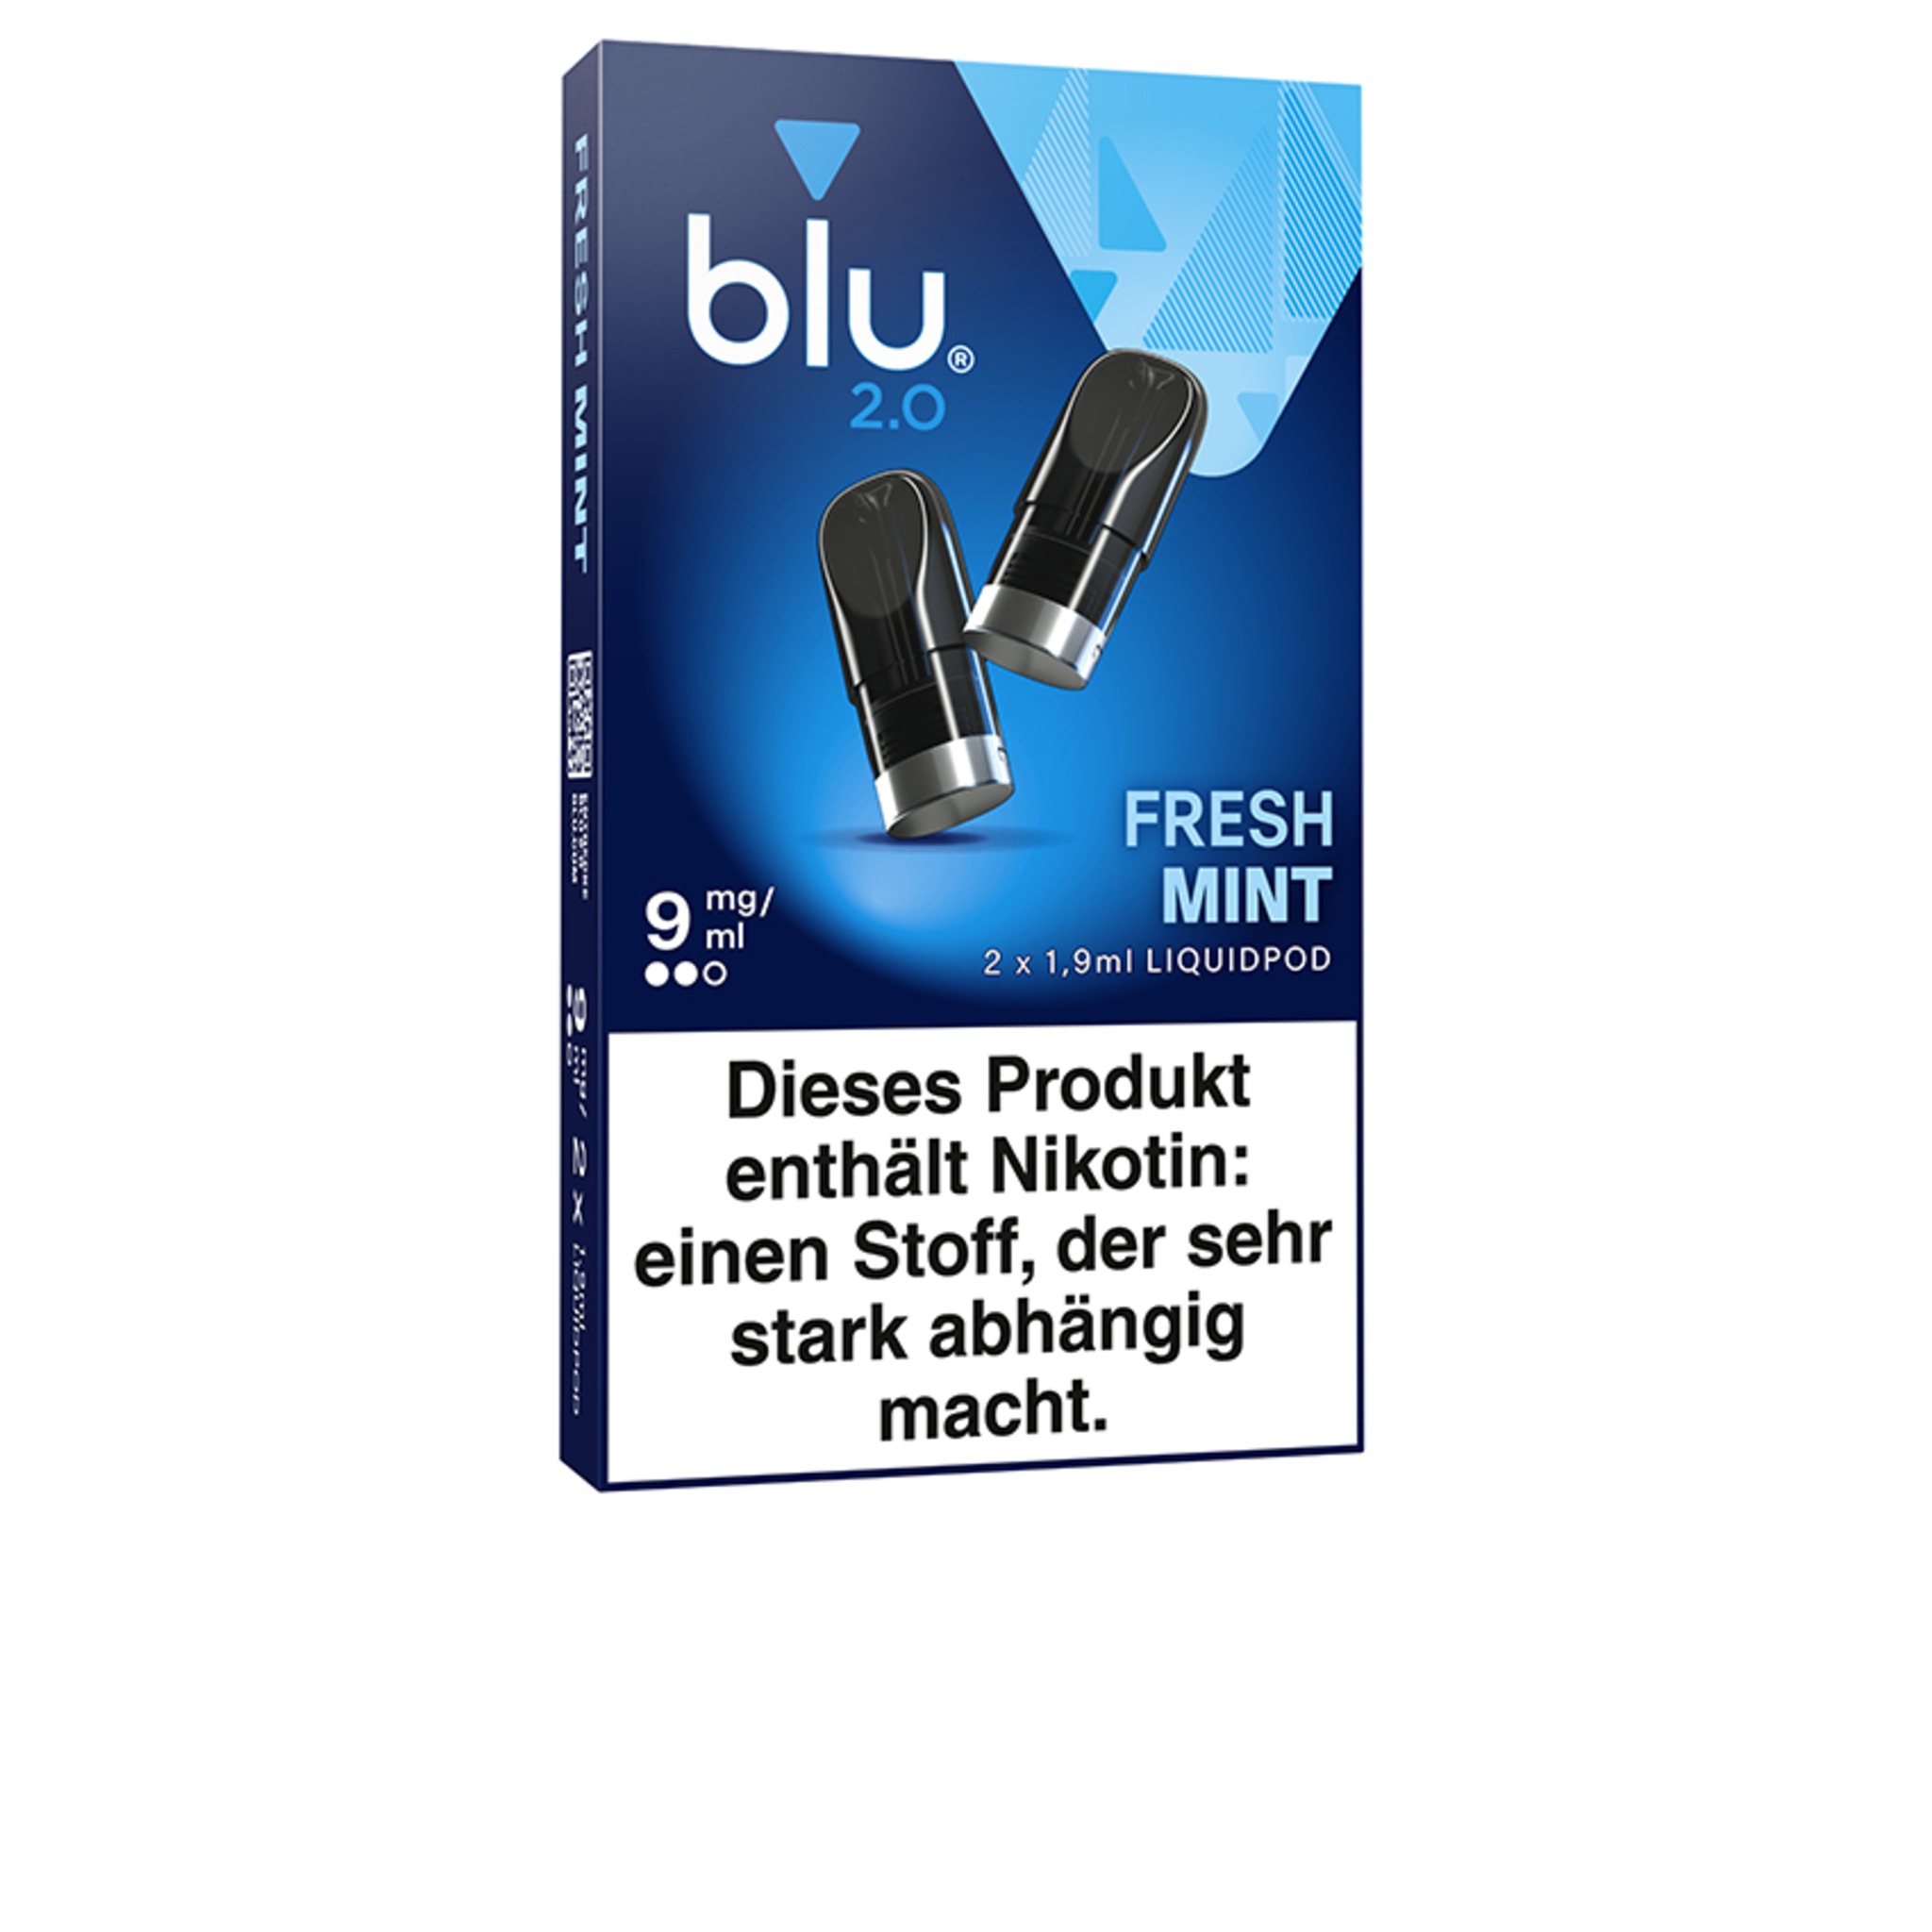 Blu 2.0 - Fresh Mint